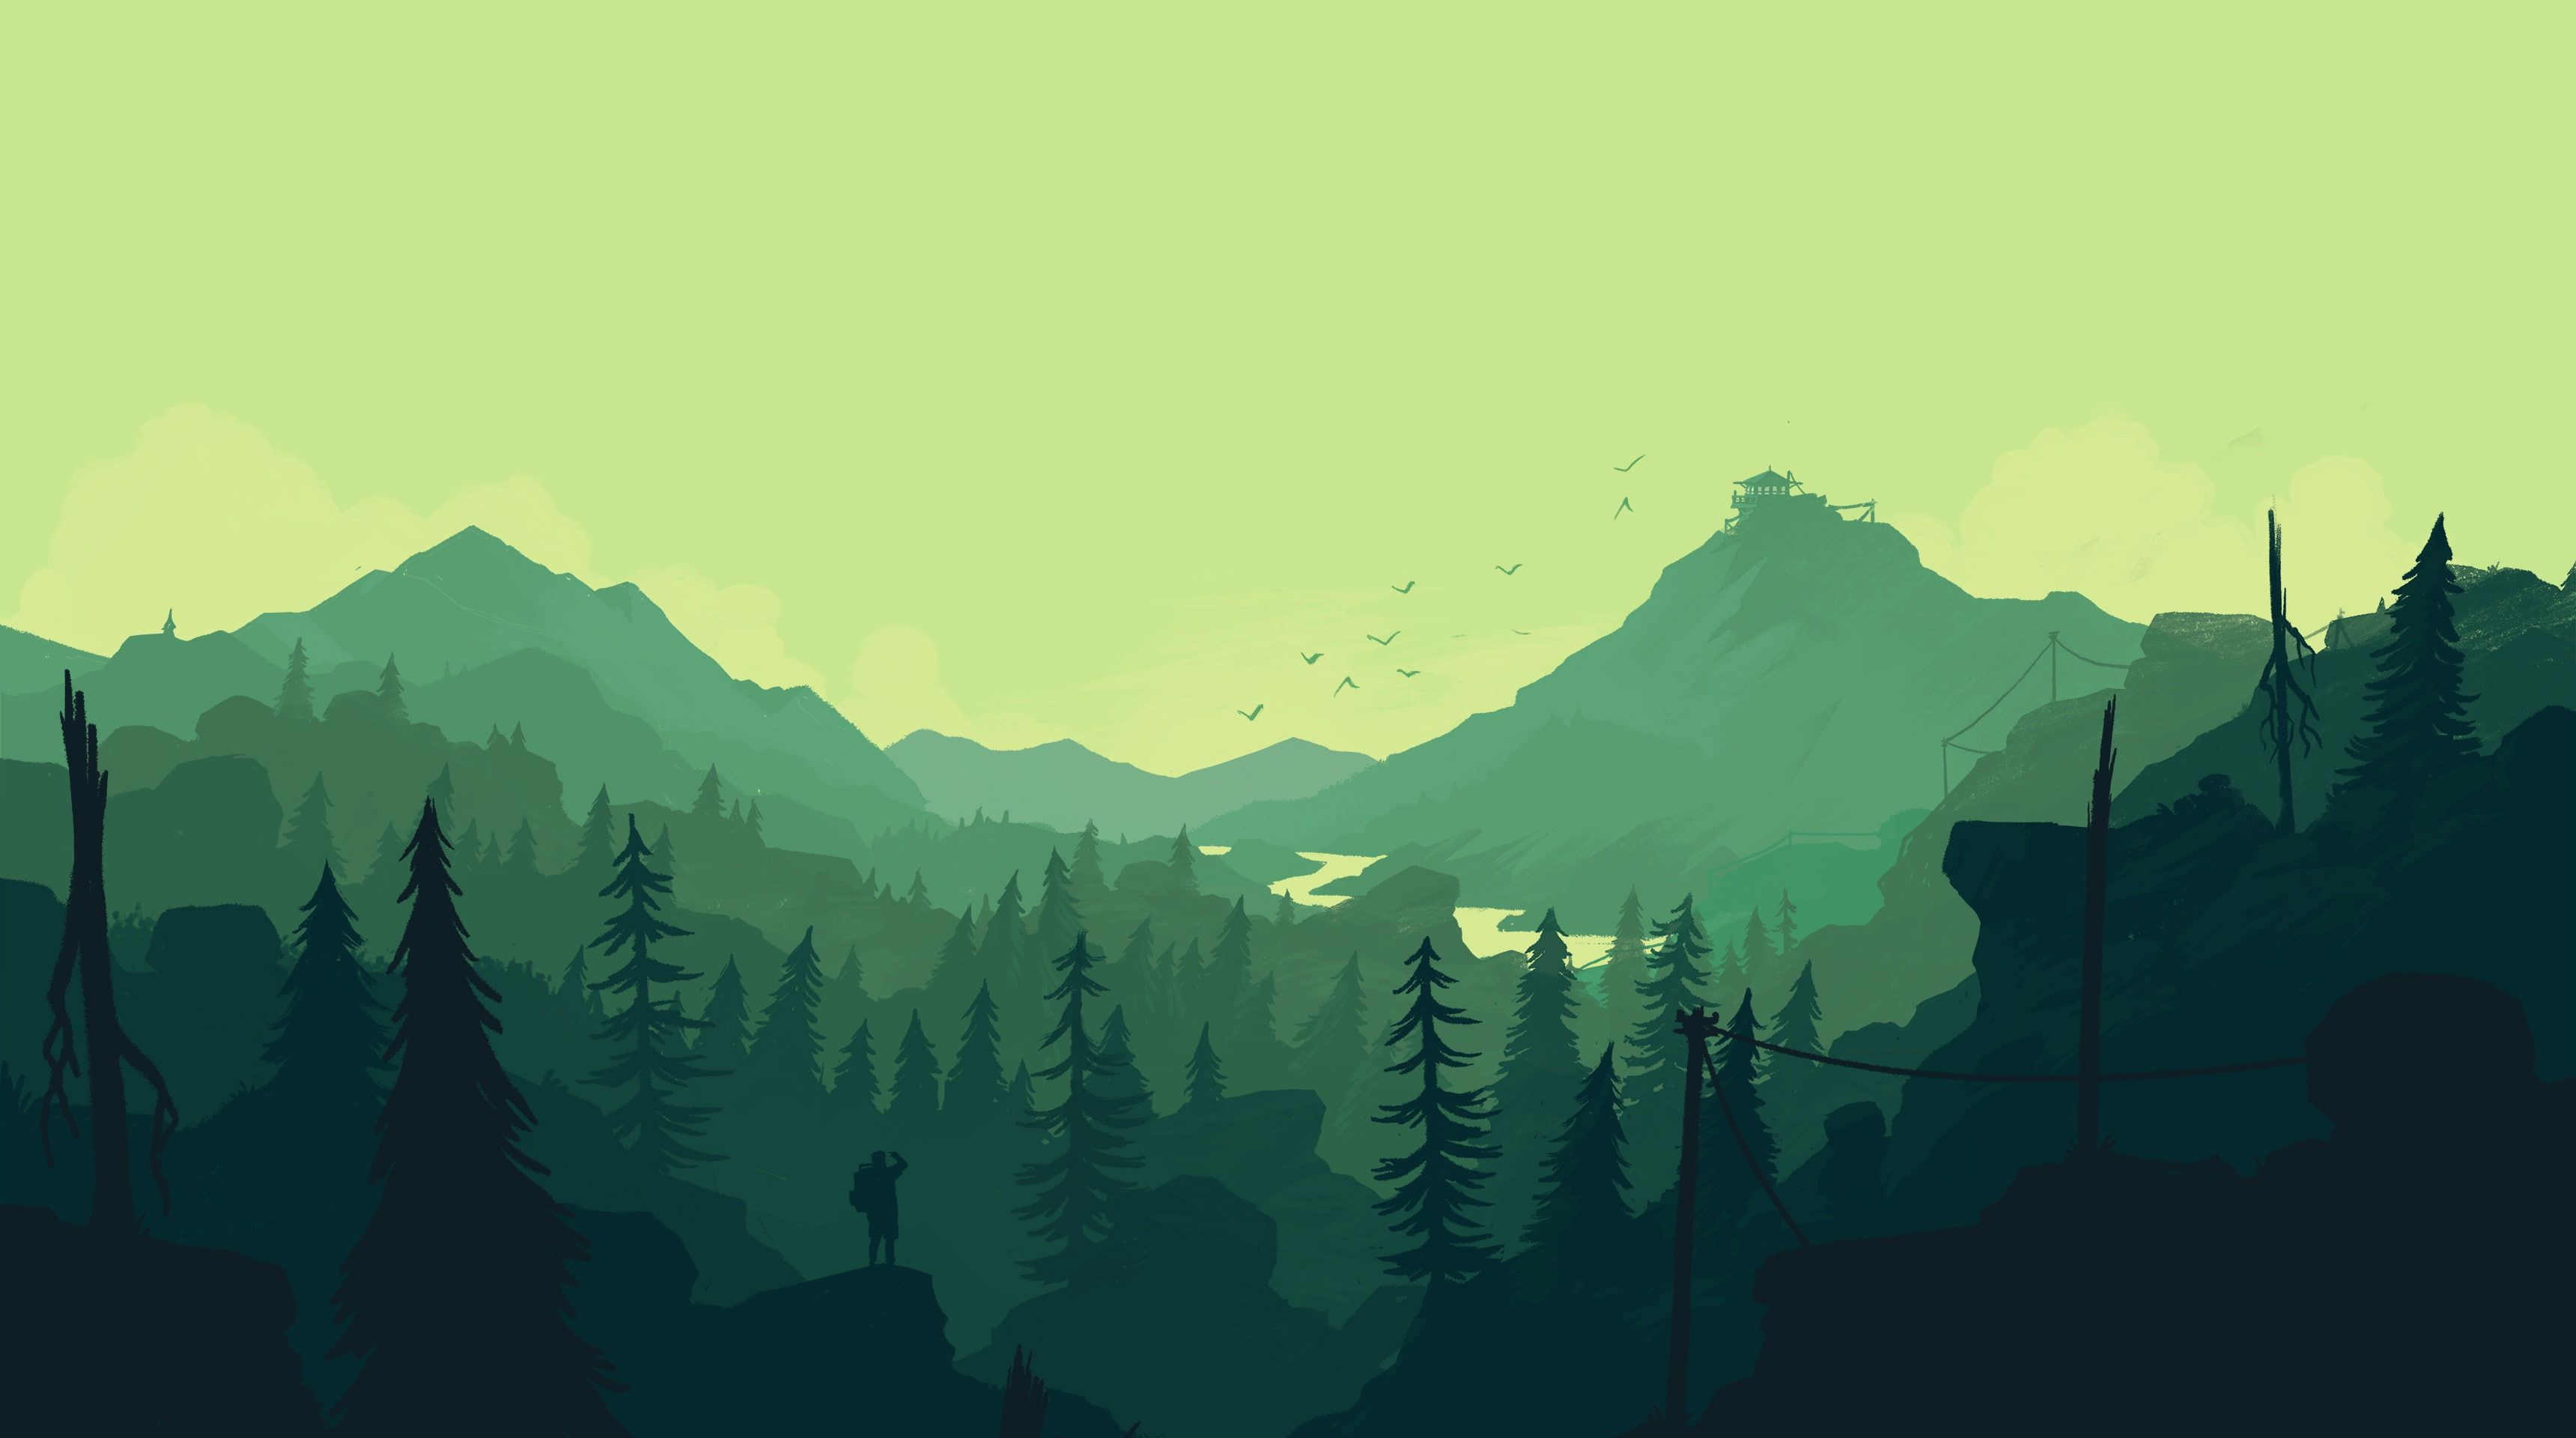 Mountains #Firewatch #Green #Forest K #Minimal K #wallpaper #hdwallpaper #desktop. Nature wallpaper, Green wallpaper, Aesthetic desktop wallpaper